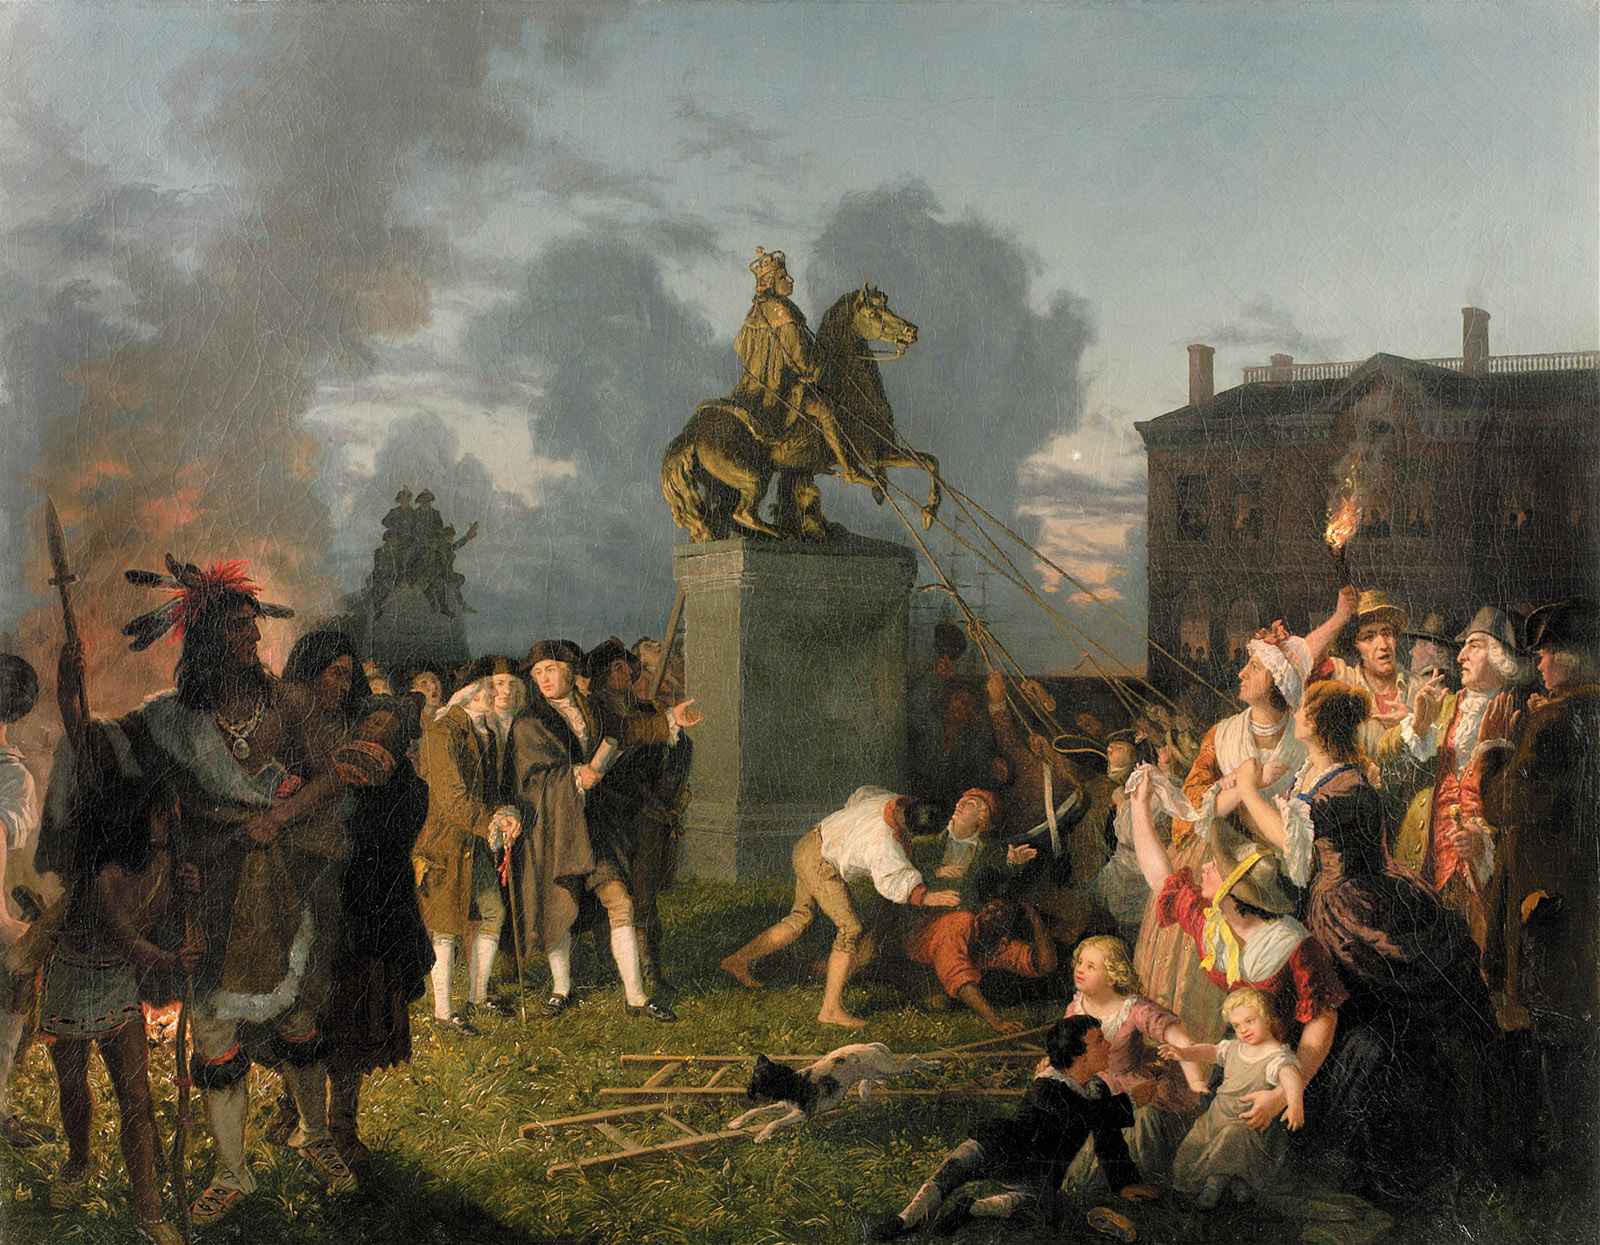 Johannes Adam Oertel: Pulling Down the Statue of King George III, 1848